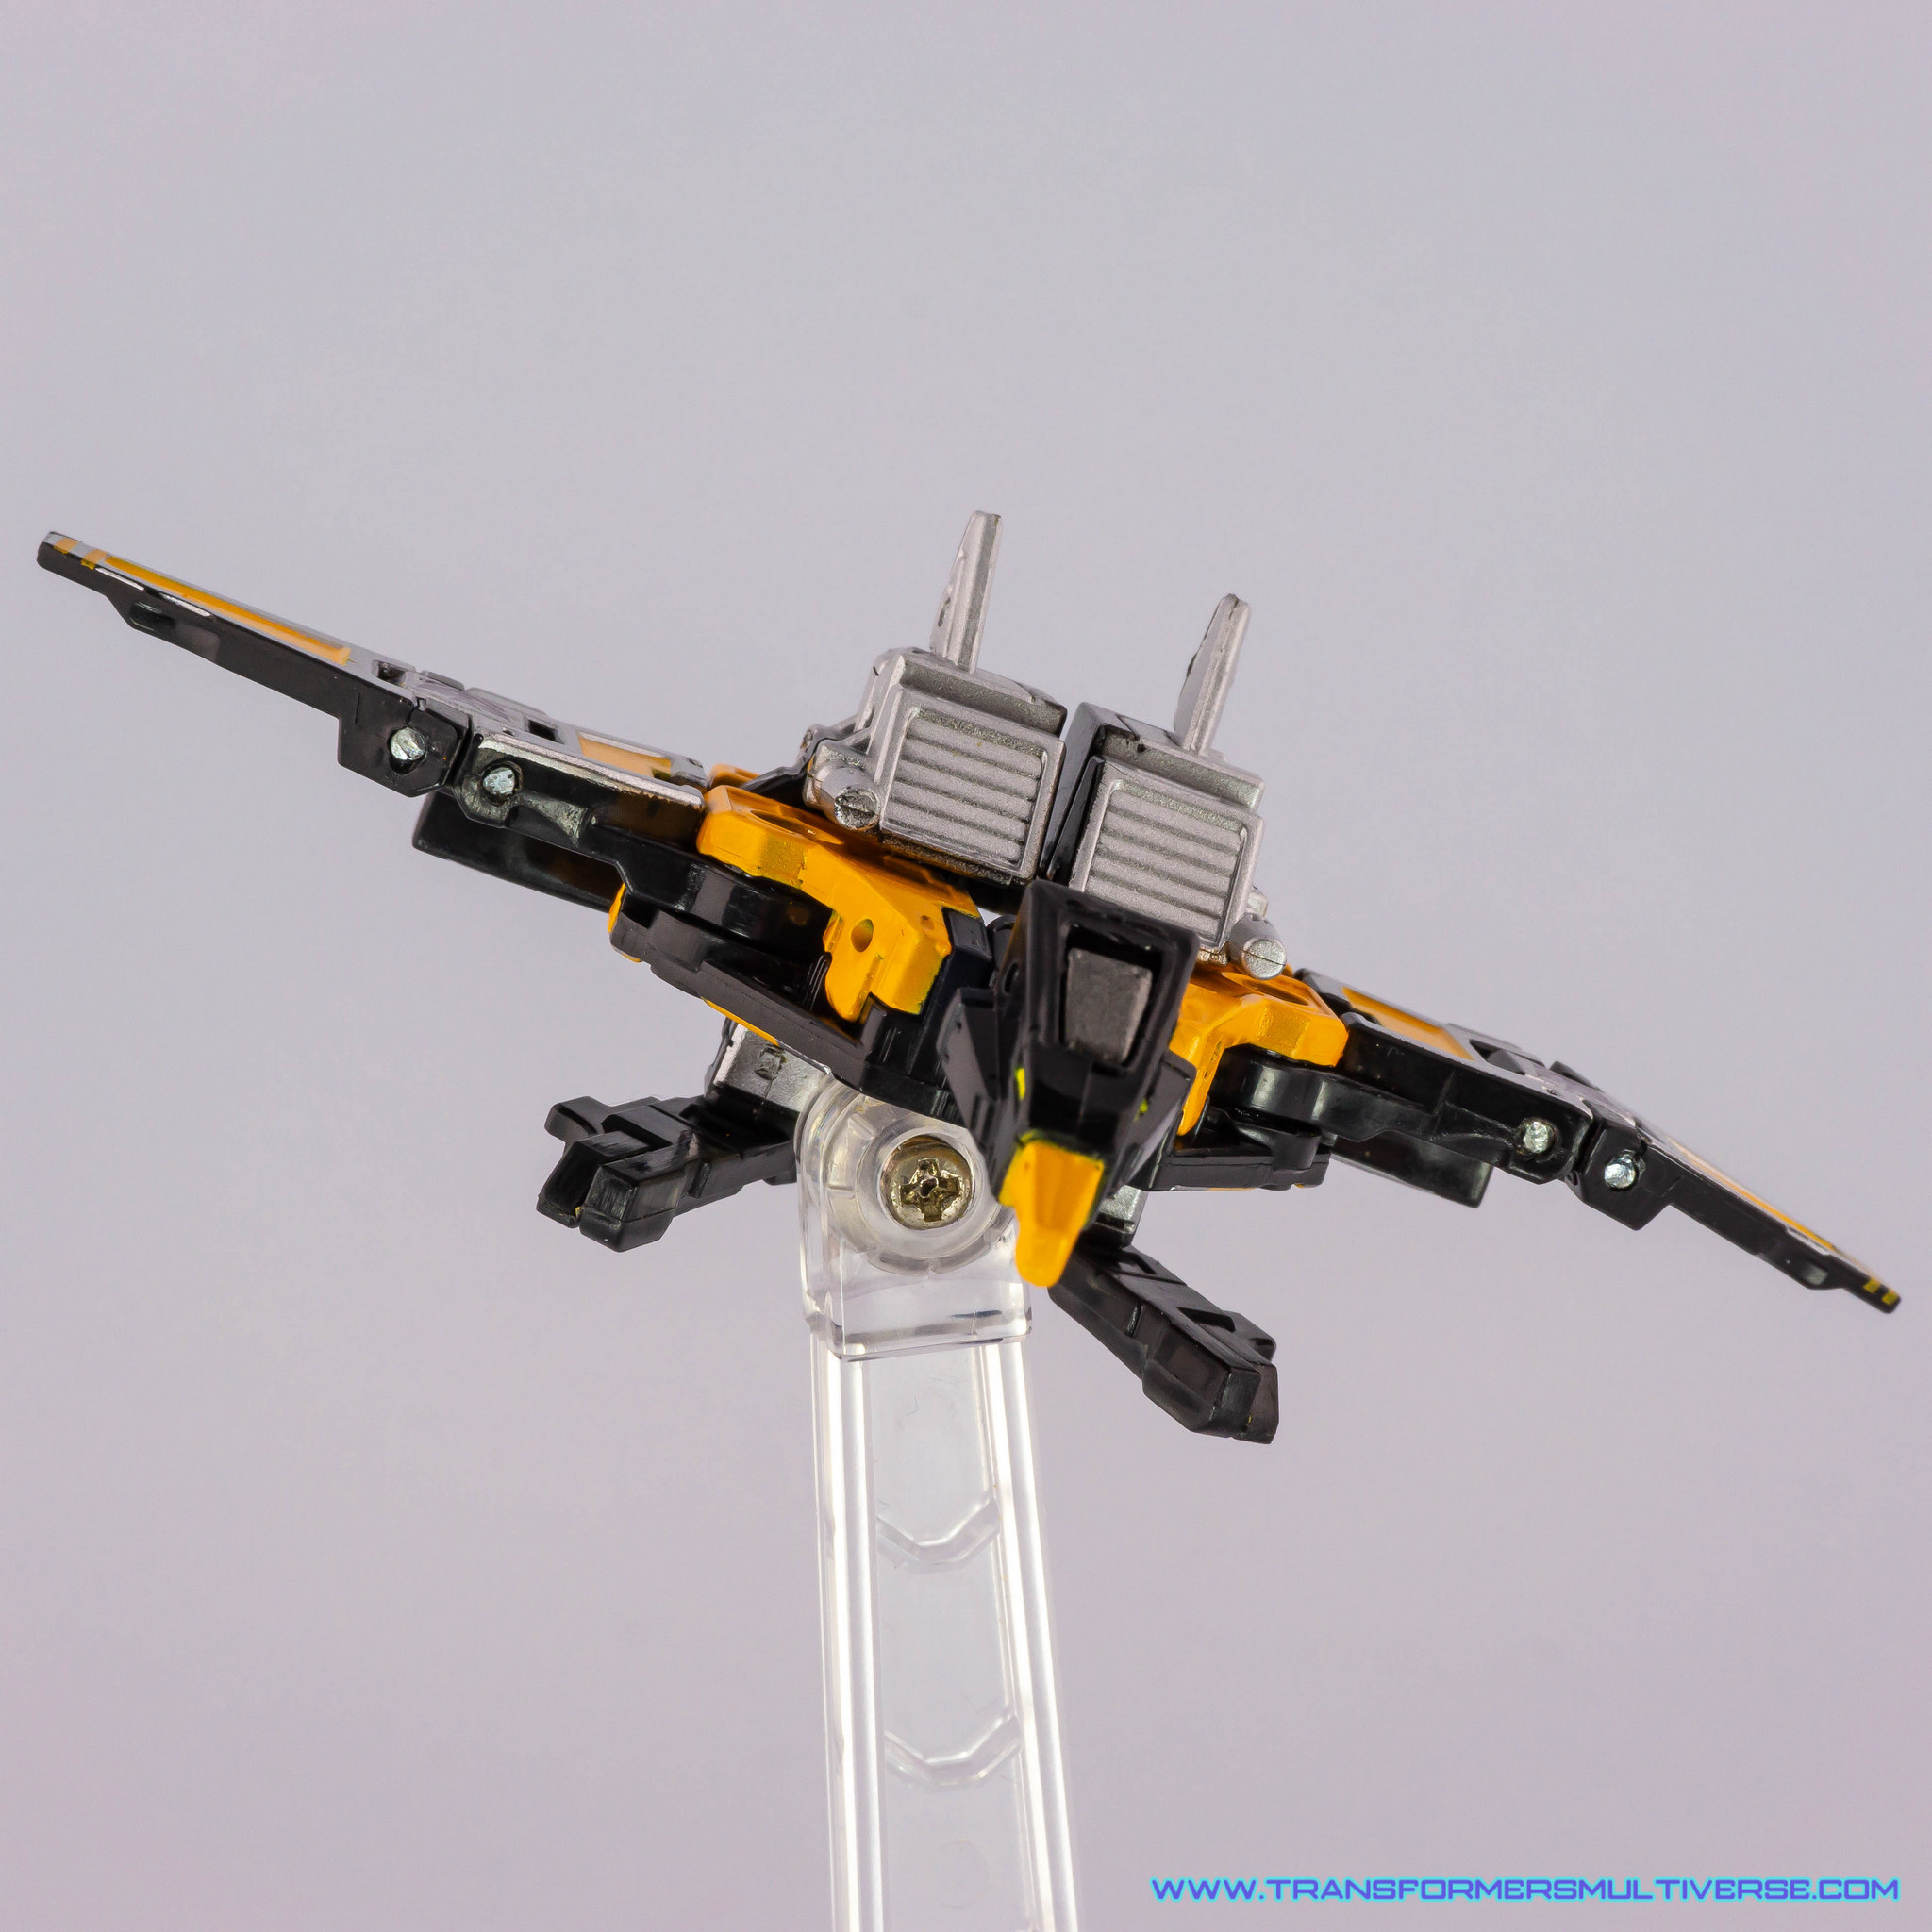 Transformers Masterpiece Buzzsaw Condor flight pose